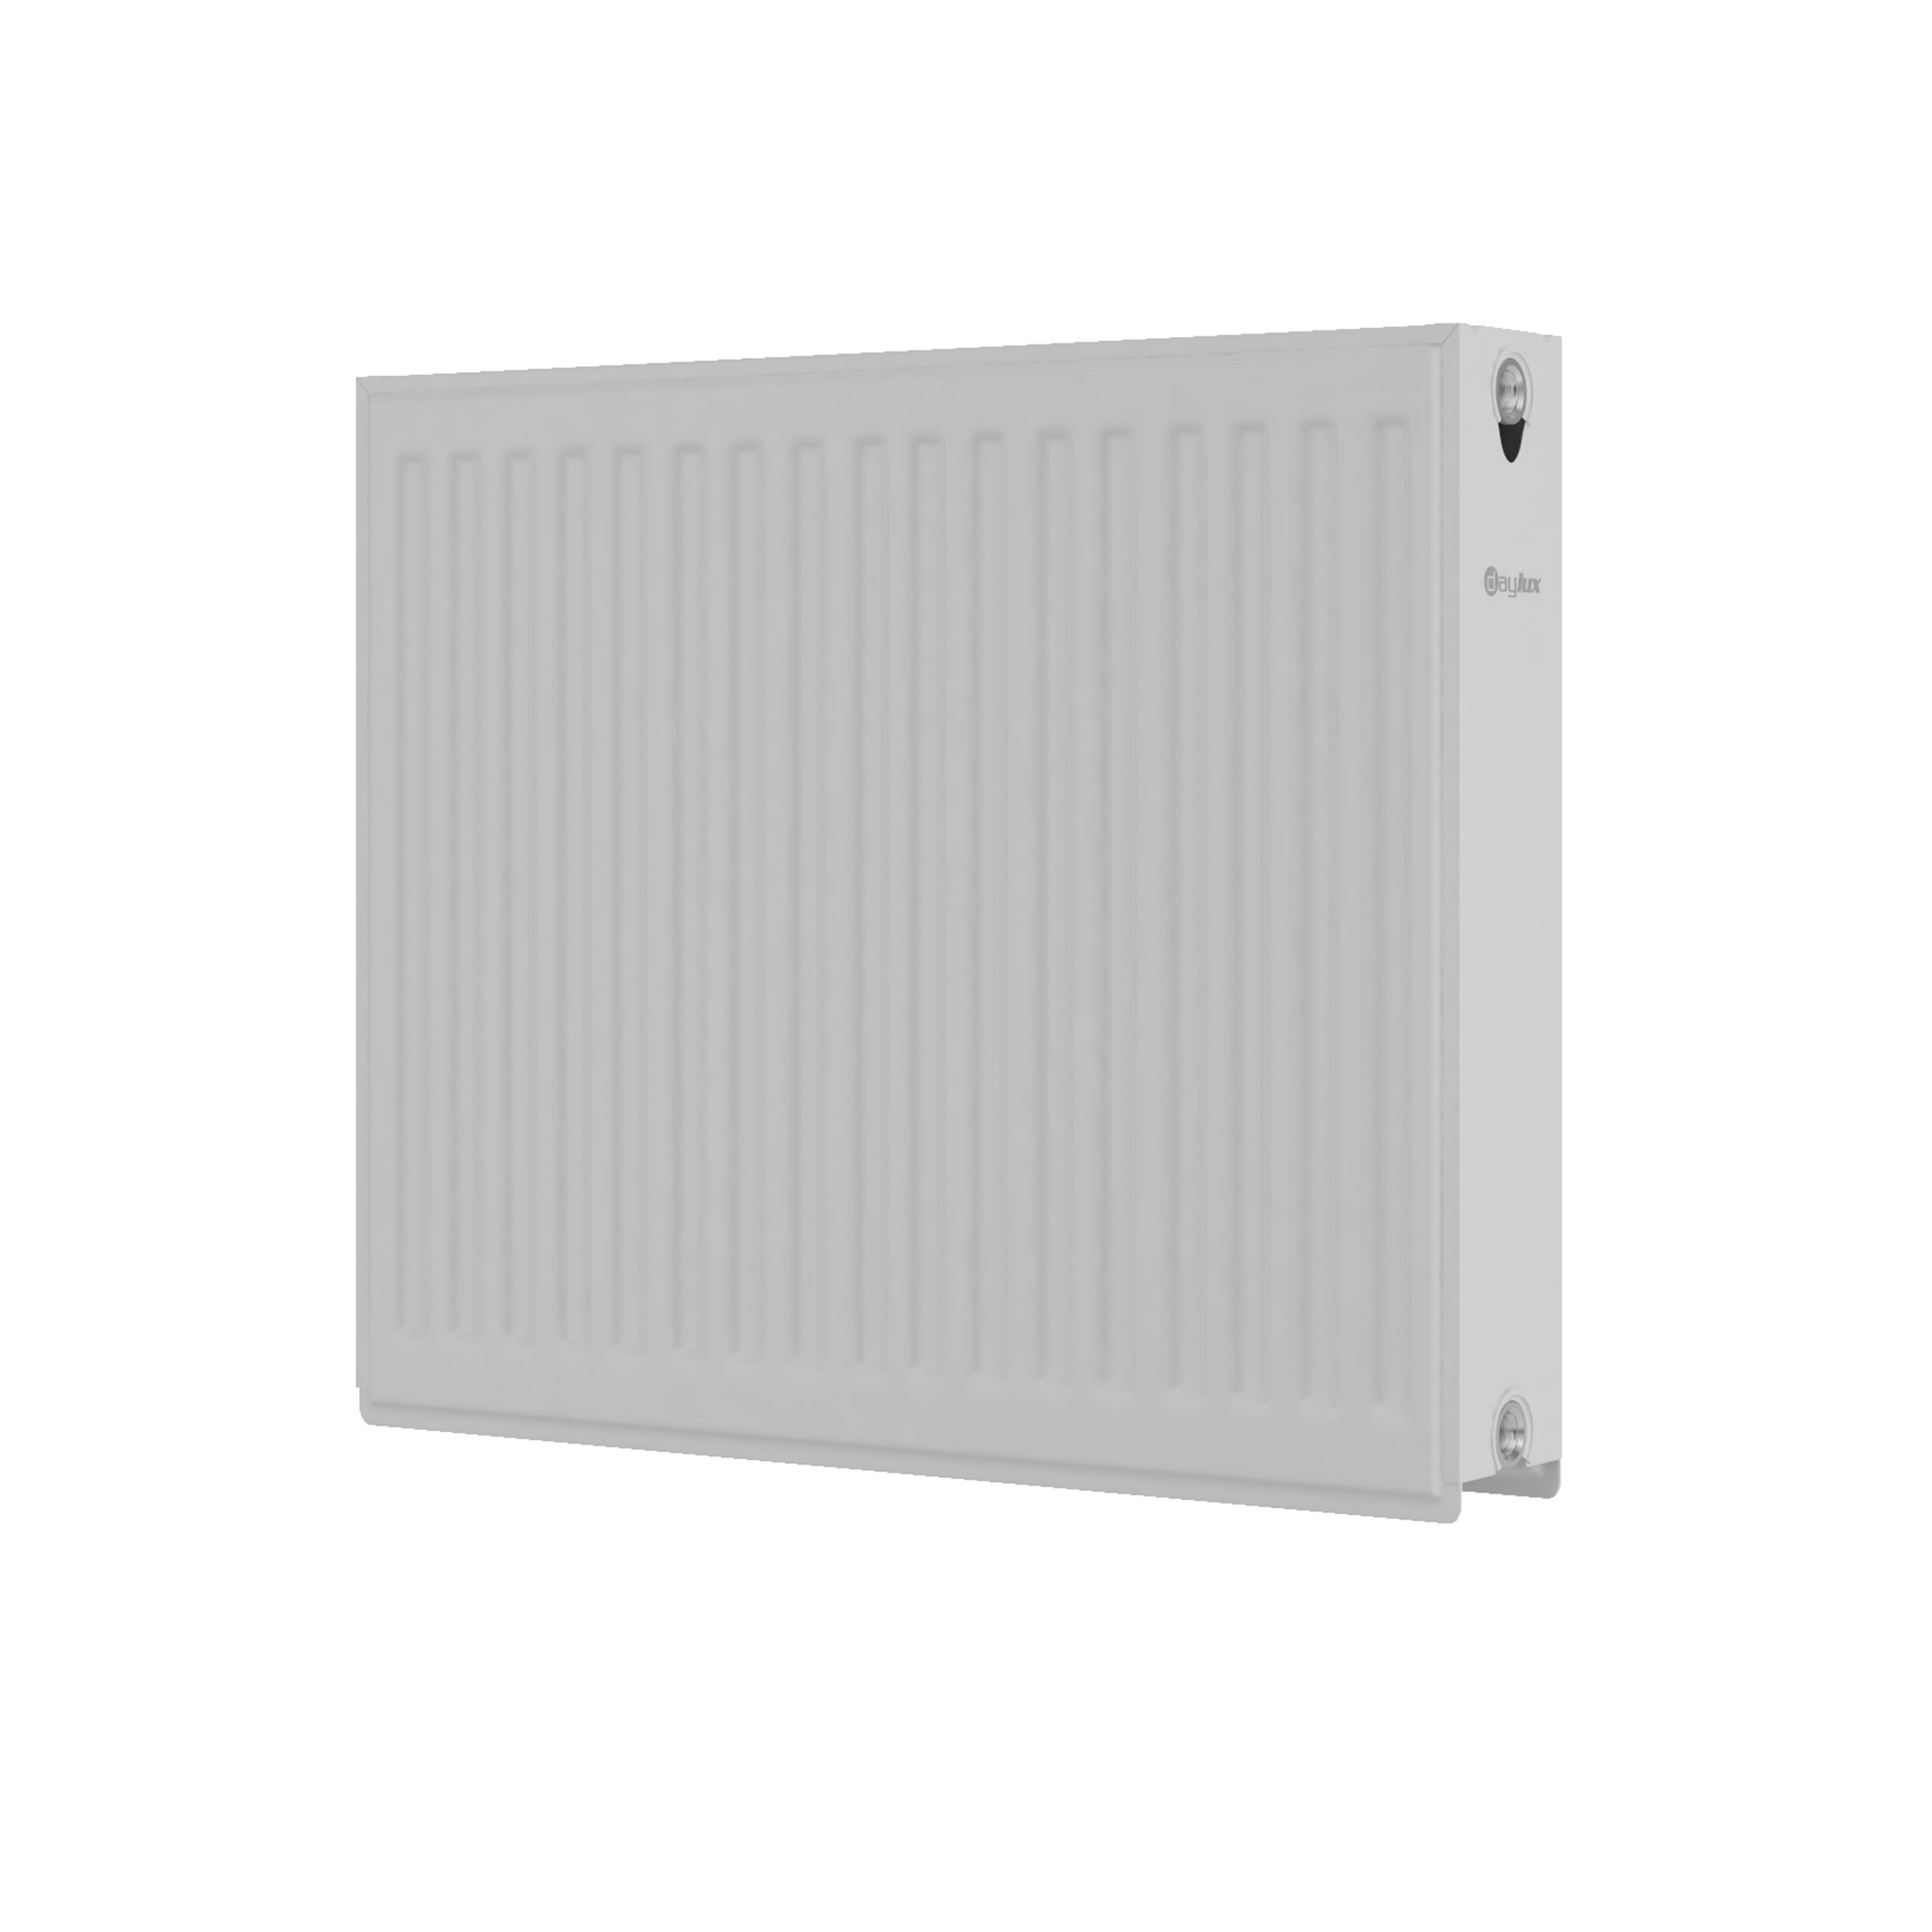 Радиатор для отопления Daylux 22 600x600 (боковое подключение) цена 2919.00 грн - фотография 2